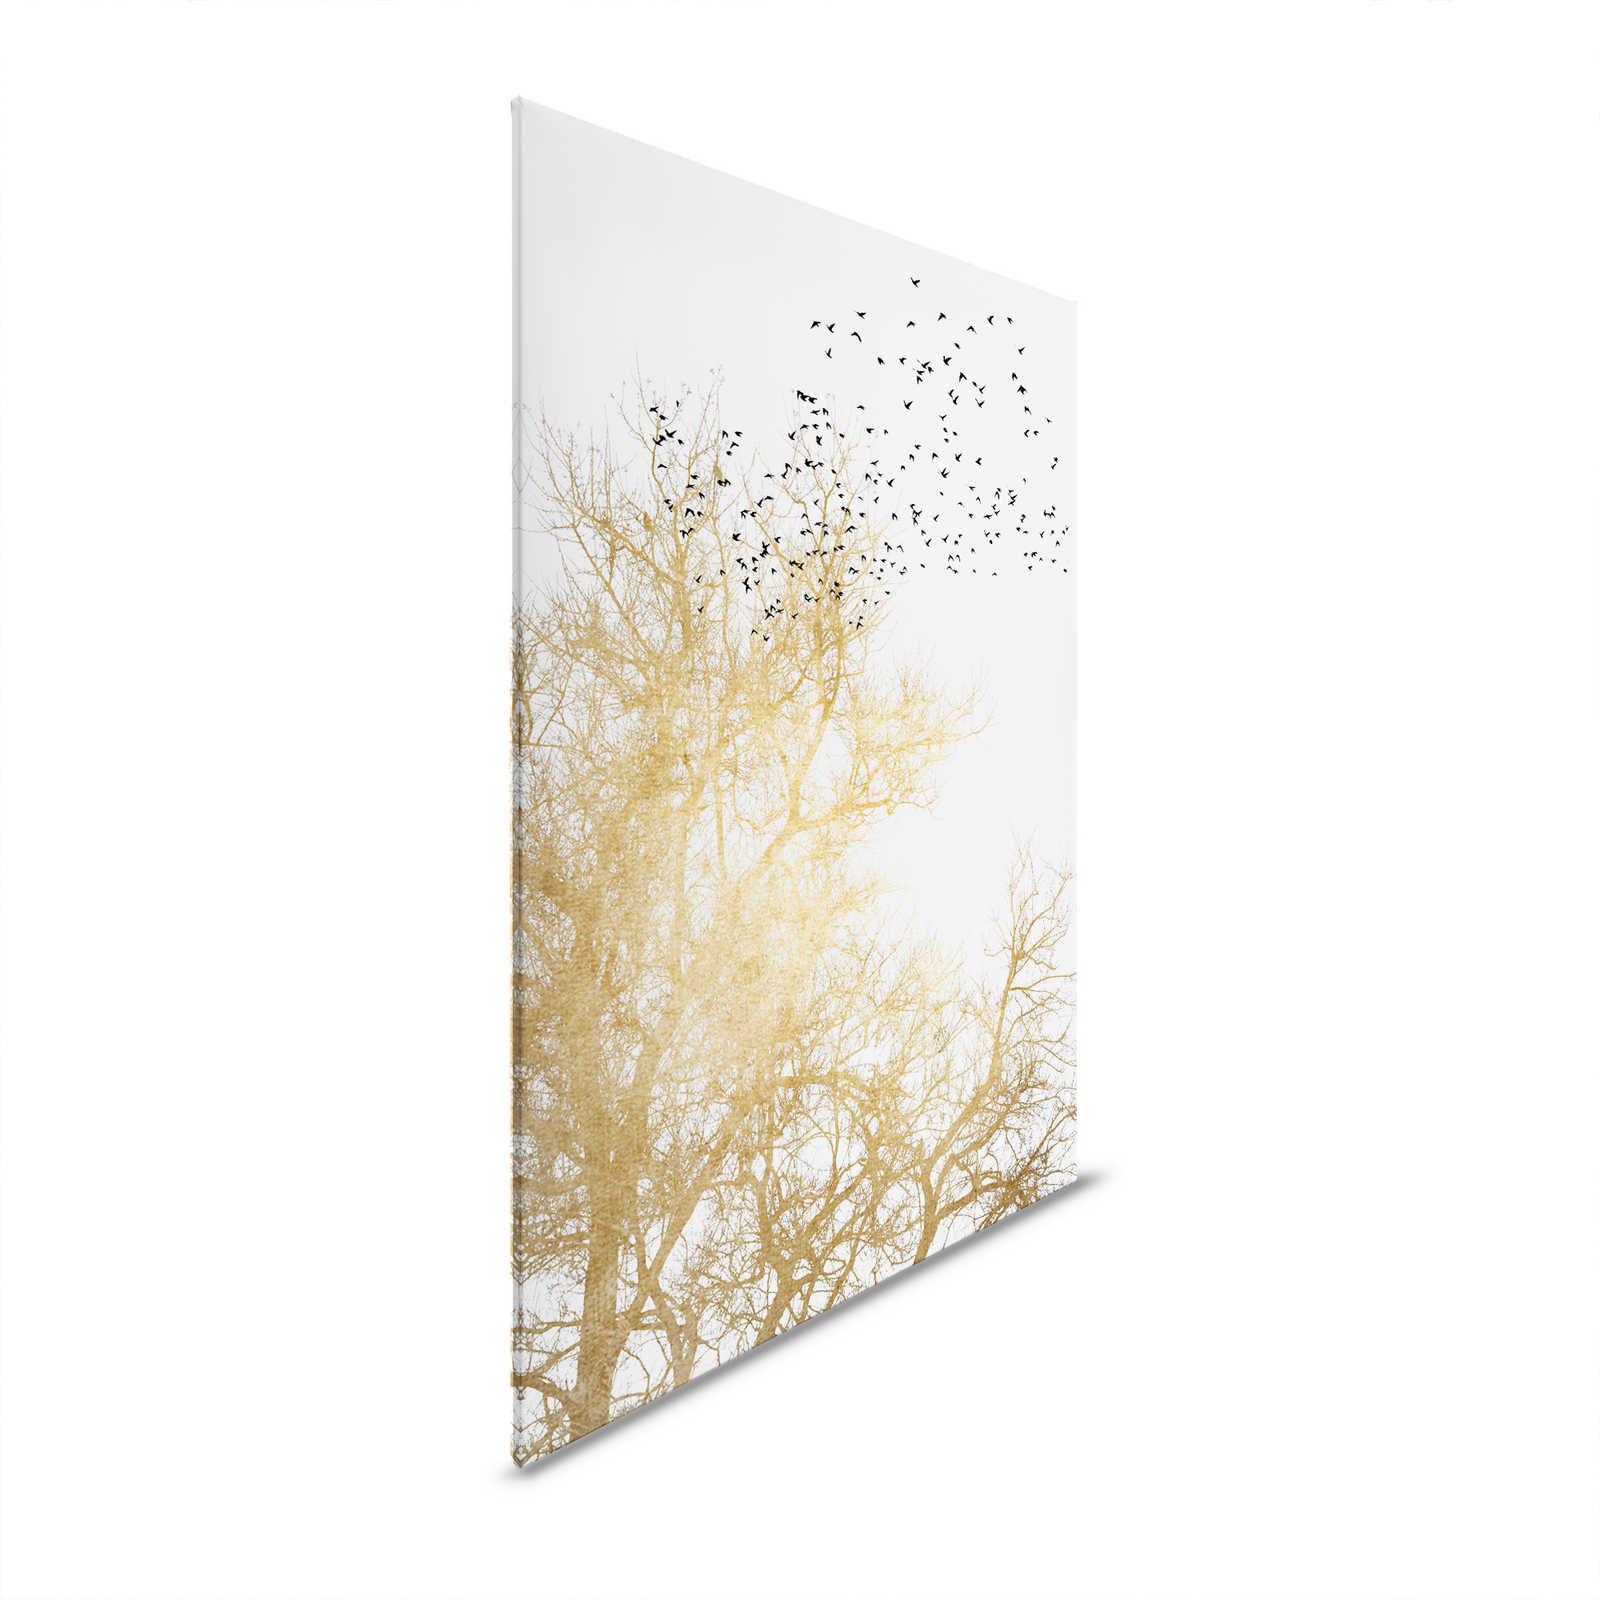 Quadro su tela con alberi dorati e stormo di uccelli - 1,20 m x 0,80 m
